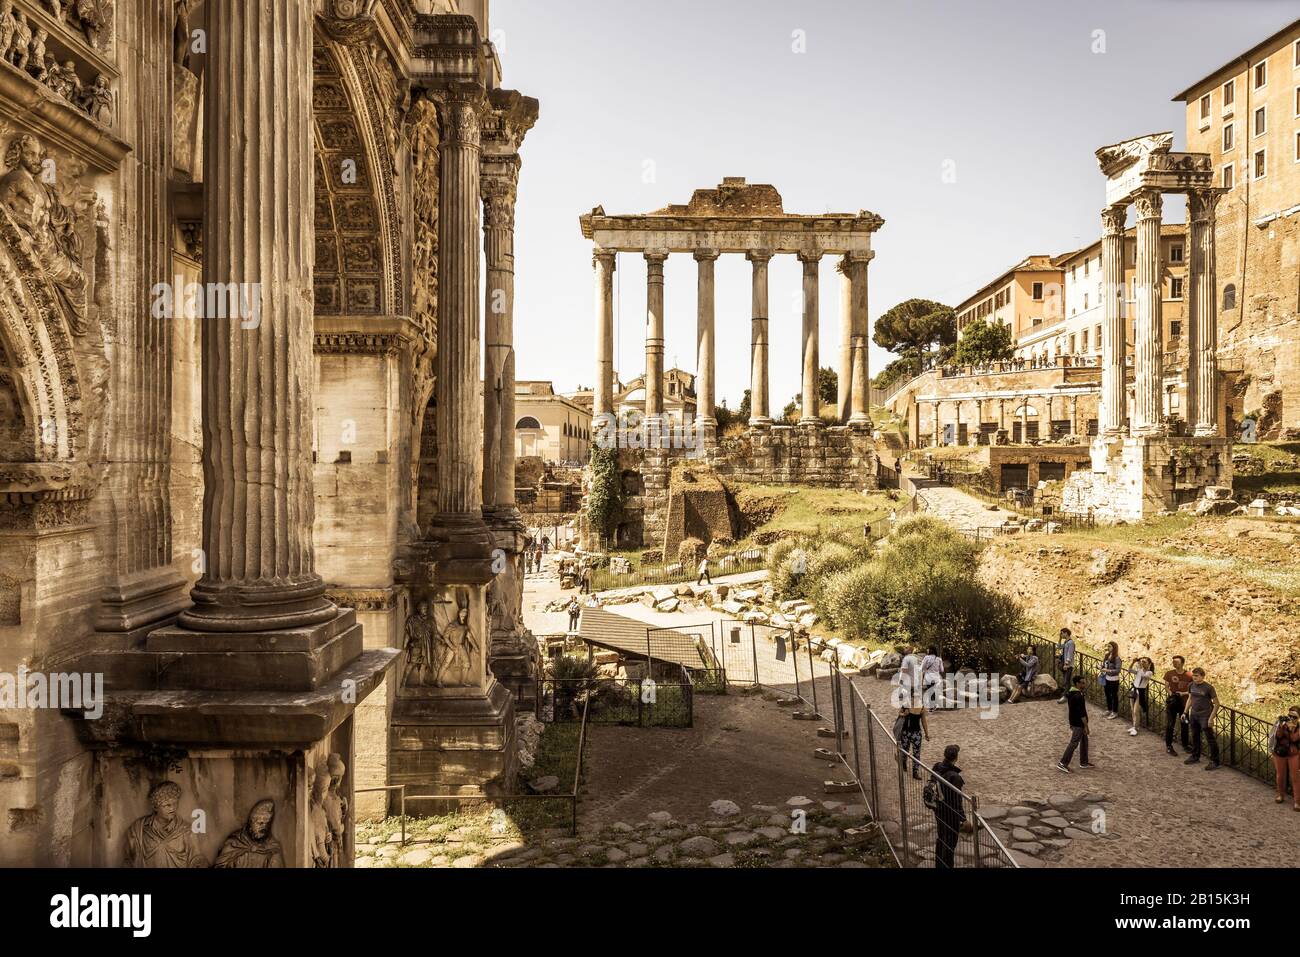 Roma, ITALIA - 15 MAGGIO 2014: Arco dell'imperatore Settimio Severo e Tempio di Saturno in lontananza al Foro Romano. Foto Stock